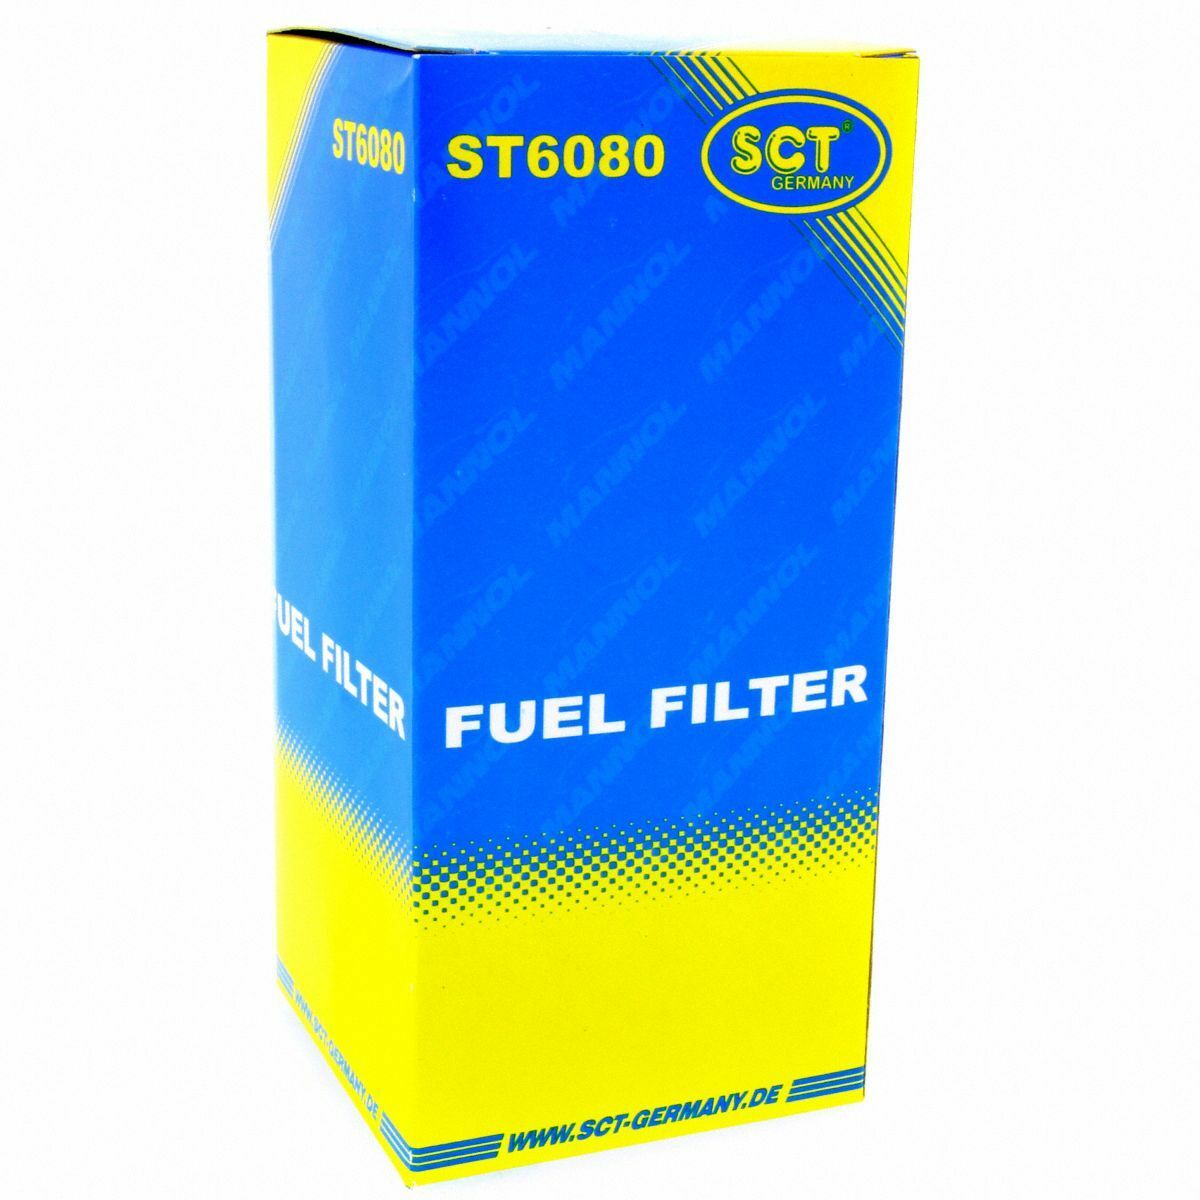 SCT Kraftstofffilter ST 6080 Motorfilter Servicefilter Benzinfilter BMW Opel